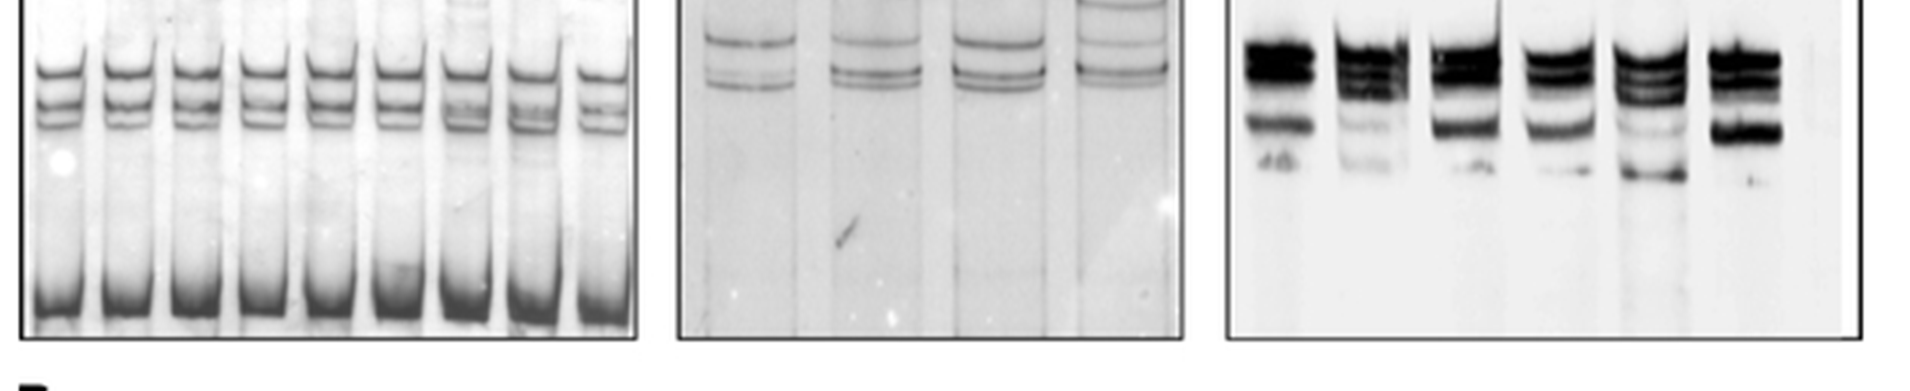 QTL genotyping: bovine MEF2C Juszczuk-Kubiak i wsp., Mol Biol Rep 2005, Inst.